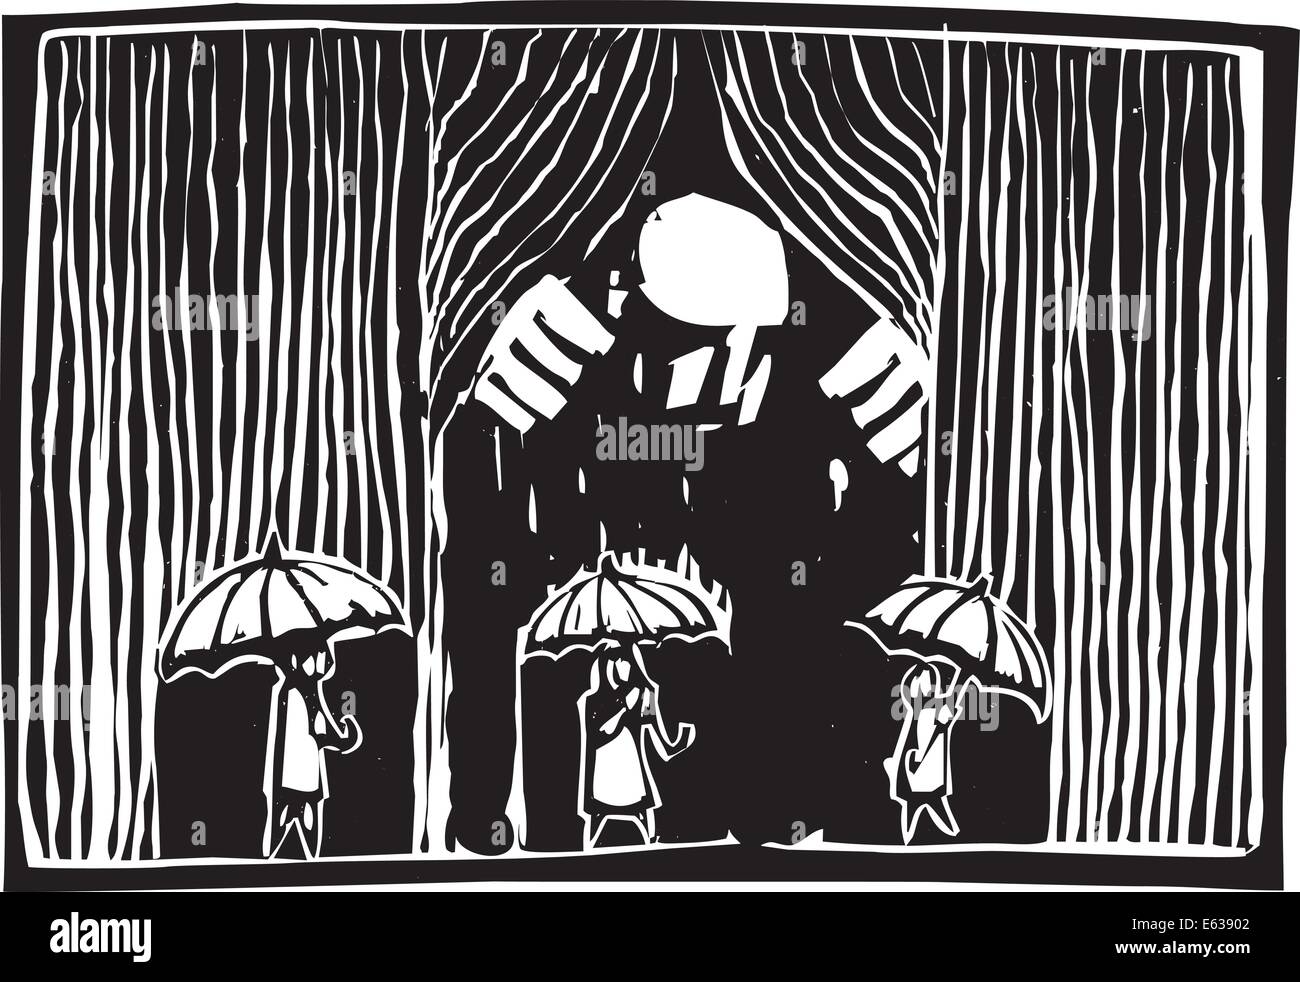 Image style gravure sur bois d'un homme géant tirant un rideau de pluie sur trois personnes avec des parasols. Illustration de Vecteur